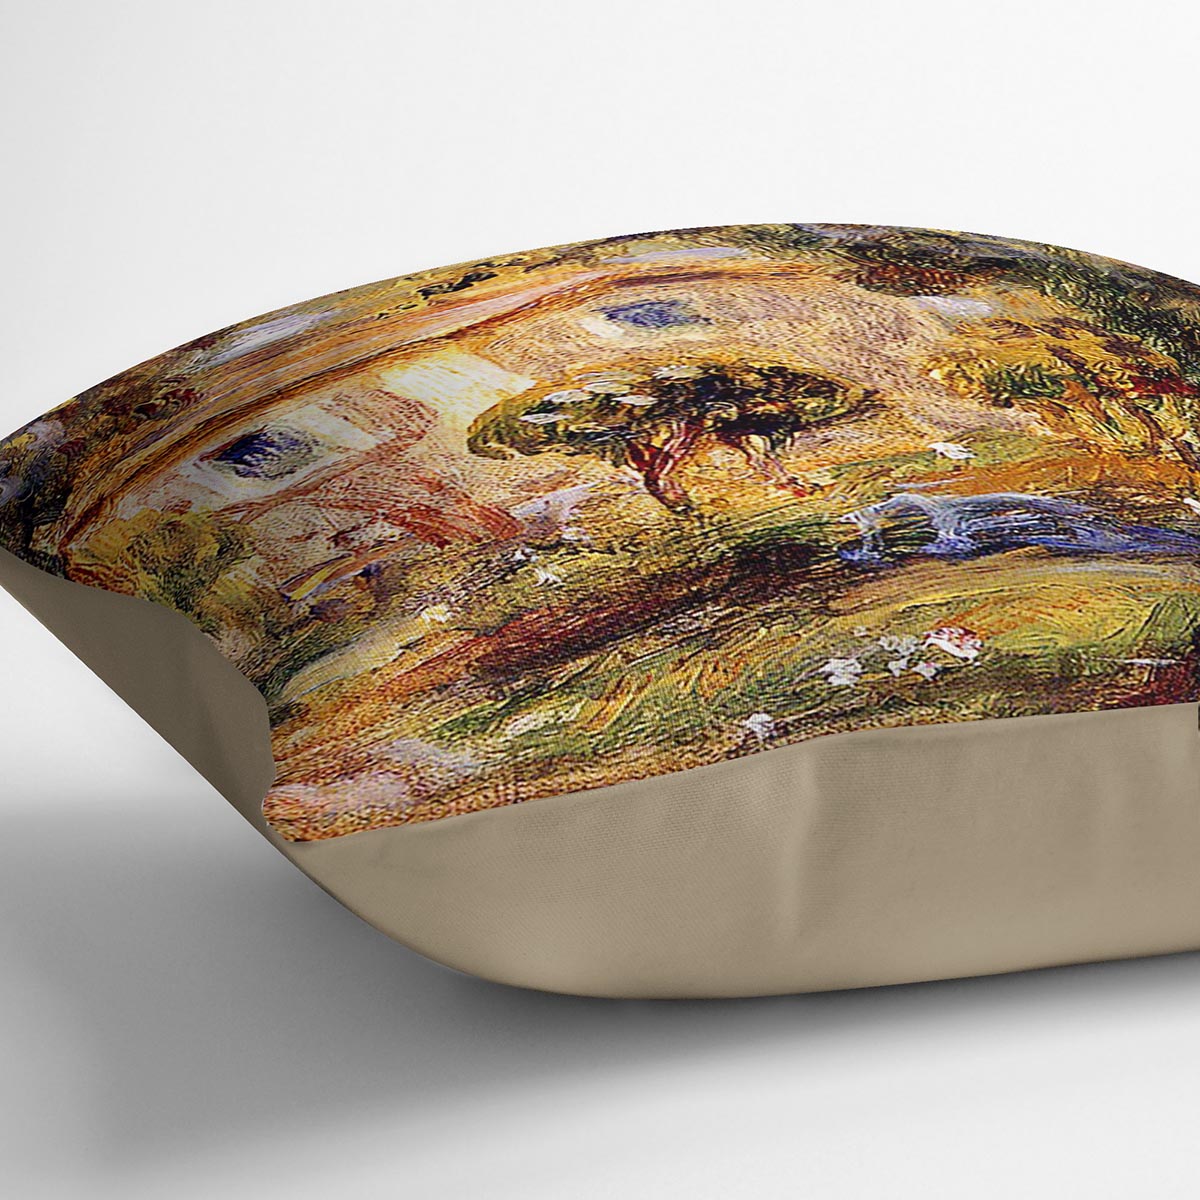 Landscape1 by Renoir Cushion